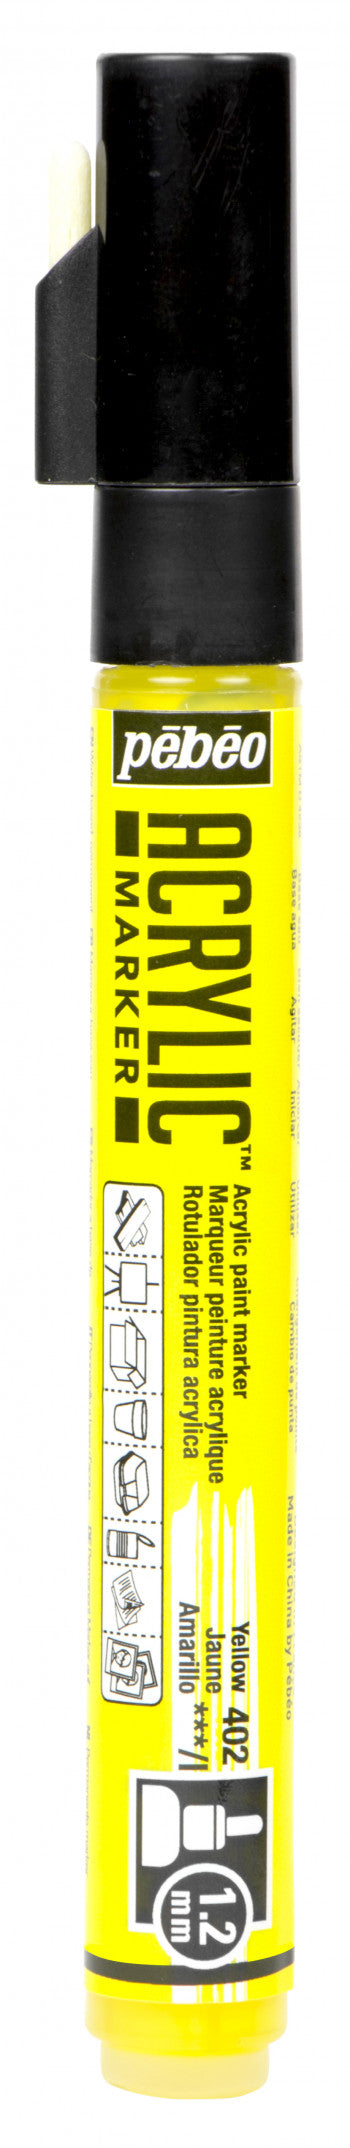 Acrylic Marker 1.2mm Pebeo Yellow - 402